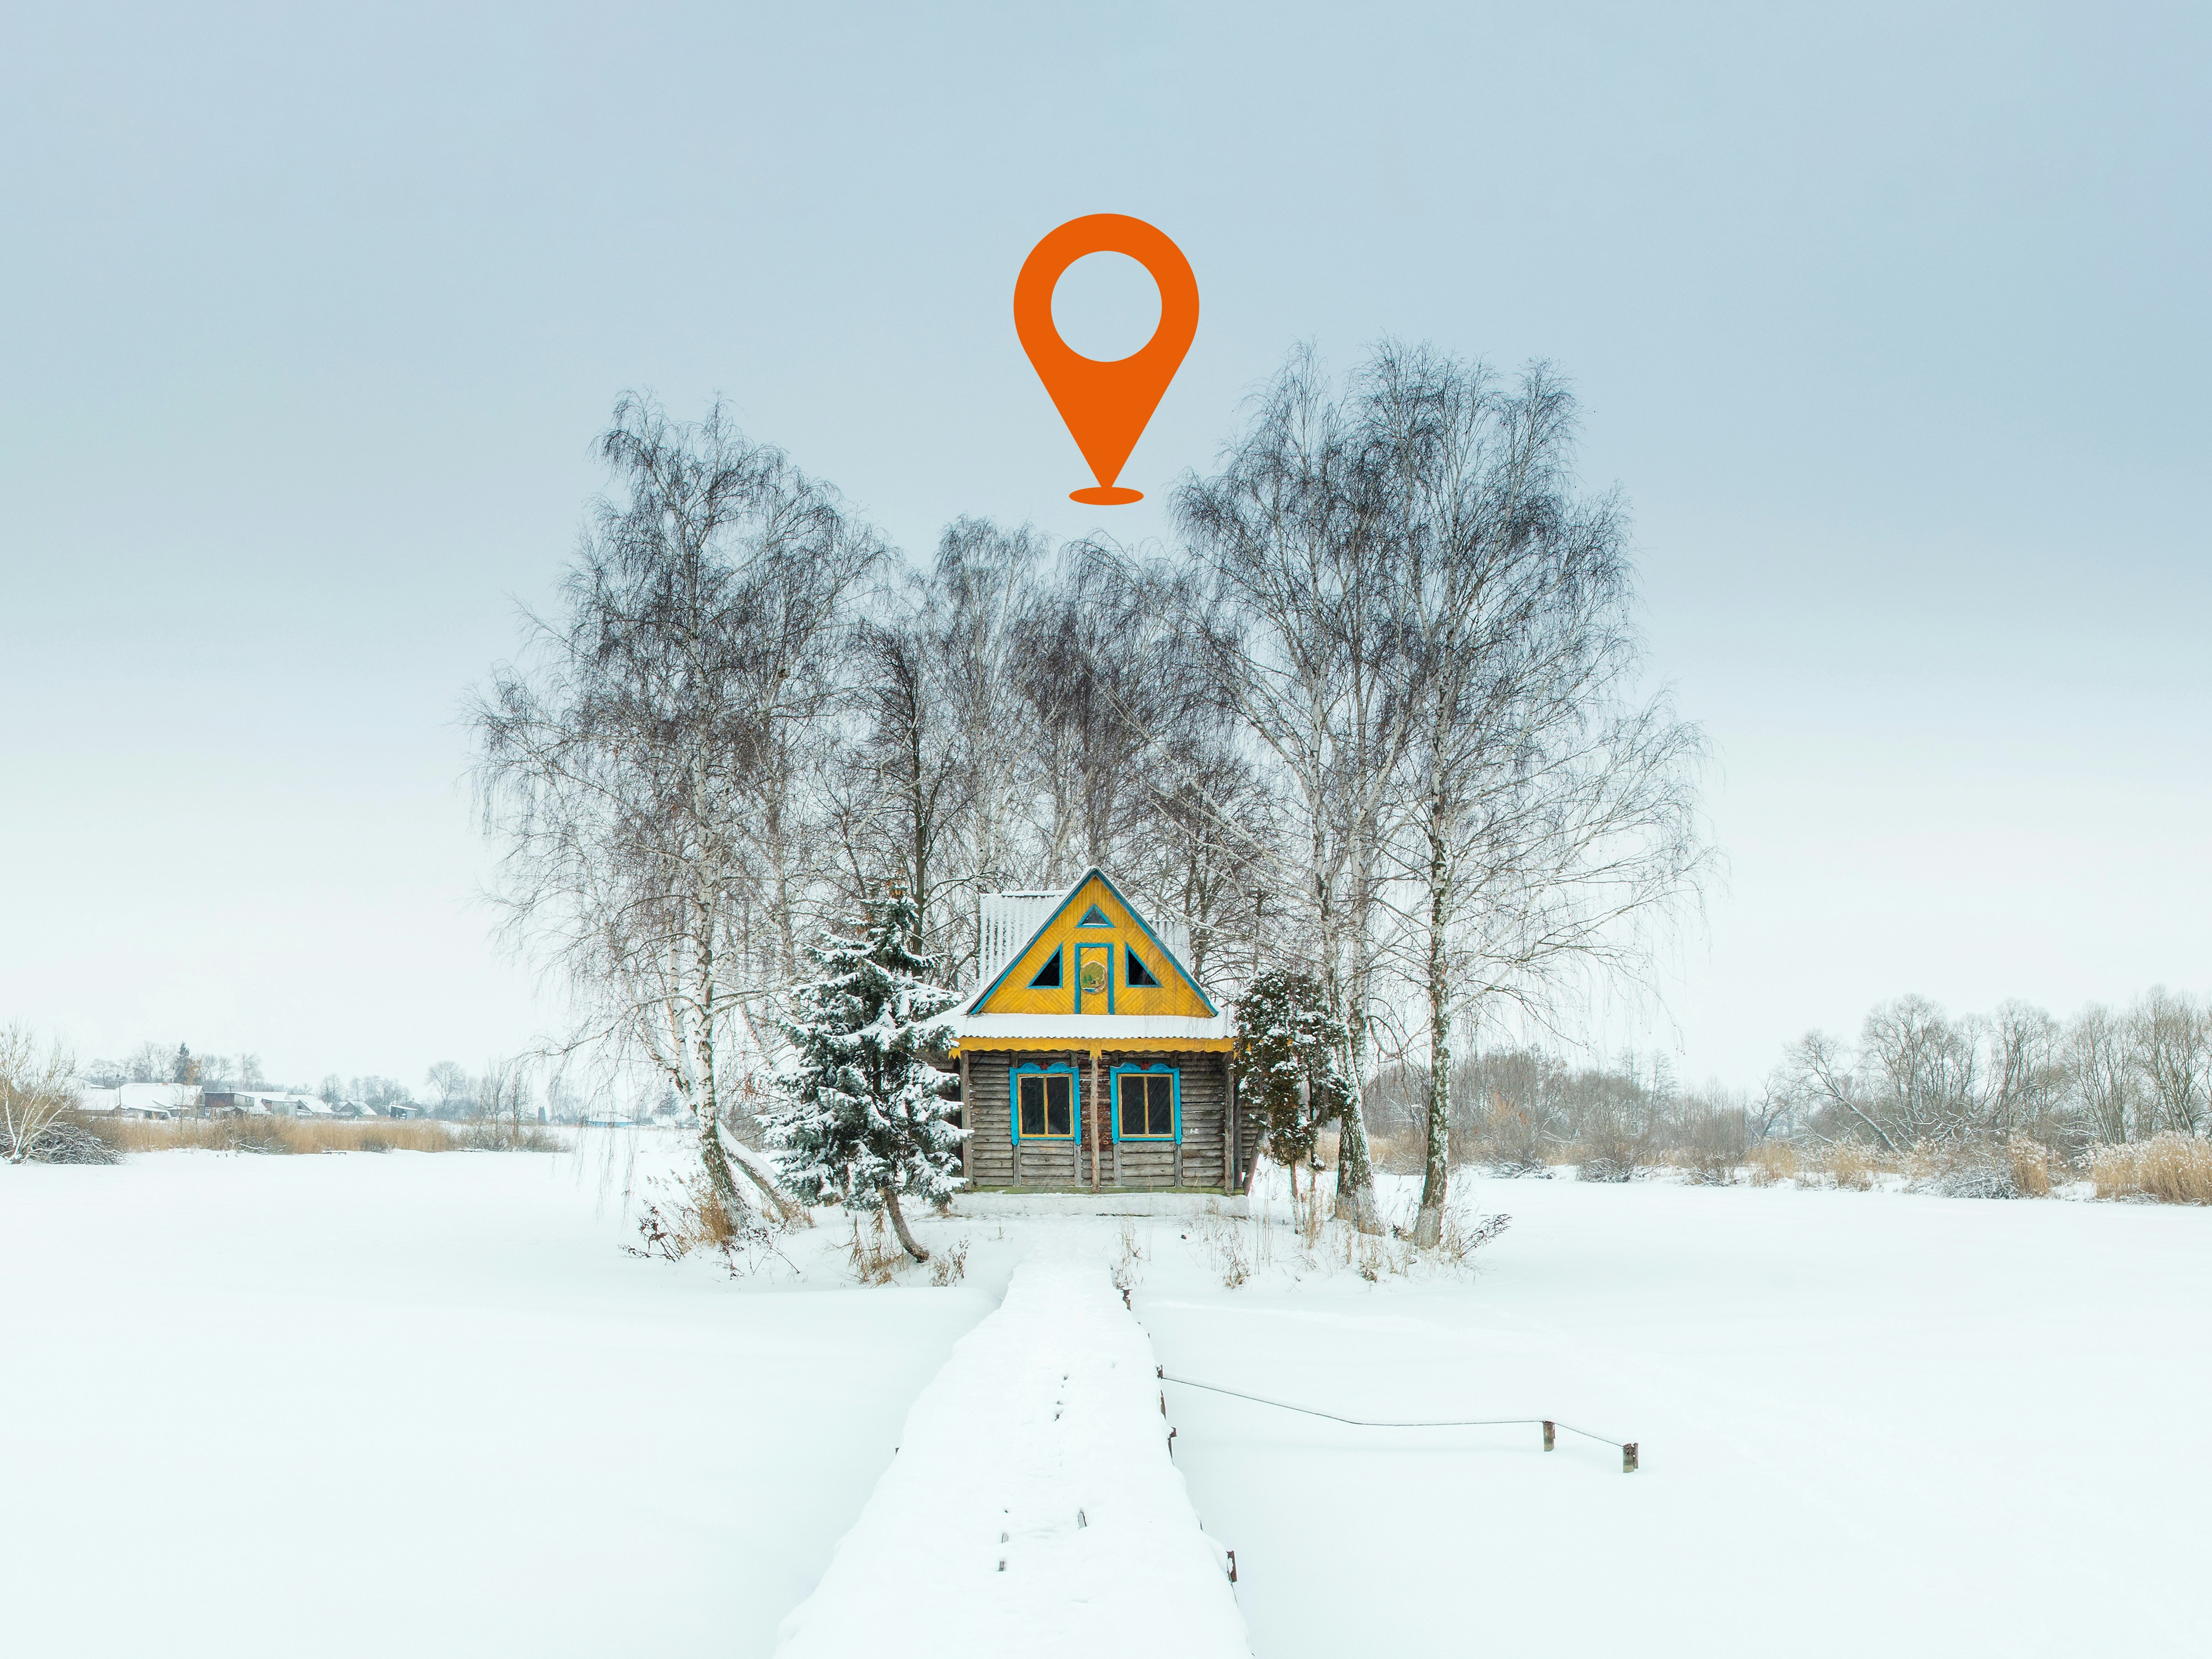 Illustrasjonsfoto av lite gult og blått hus i vinterlandskap, sentrert i bilde mellom små bjørketrær. En oransje geotag flyter over huset.